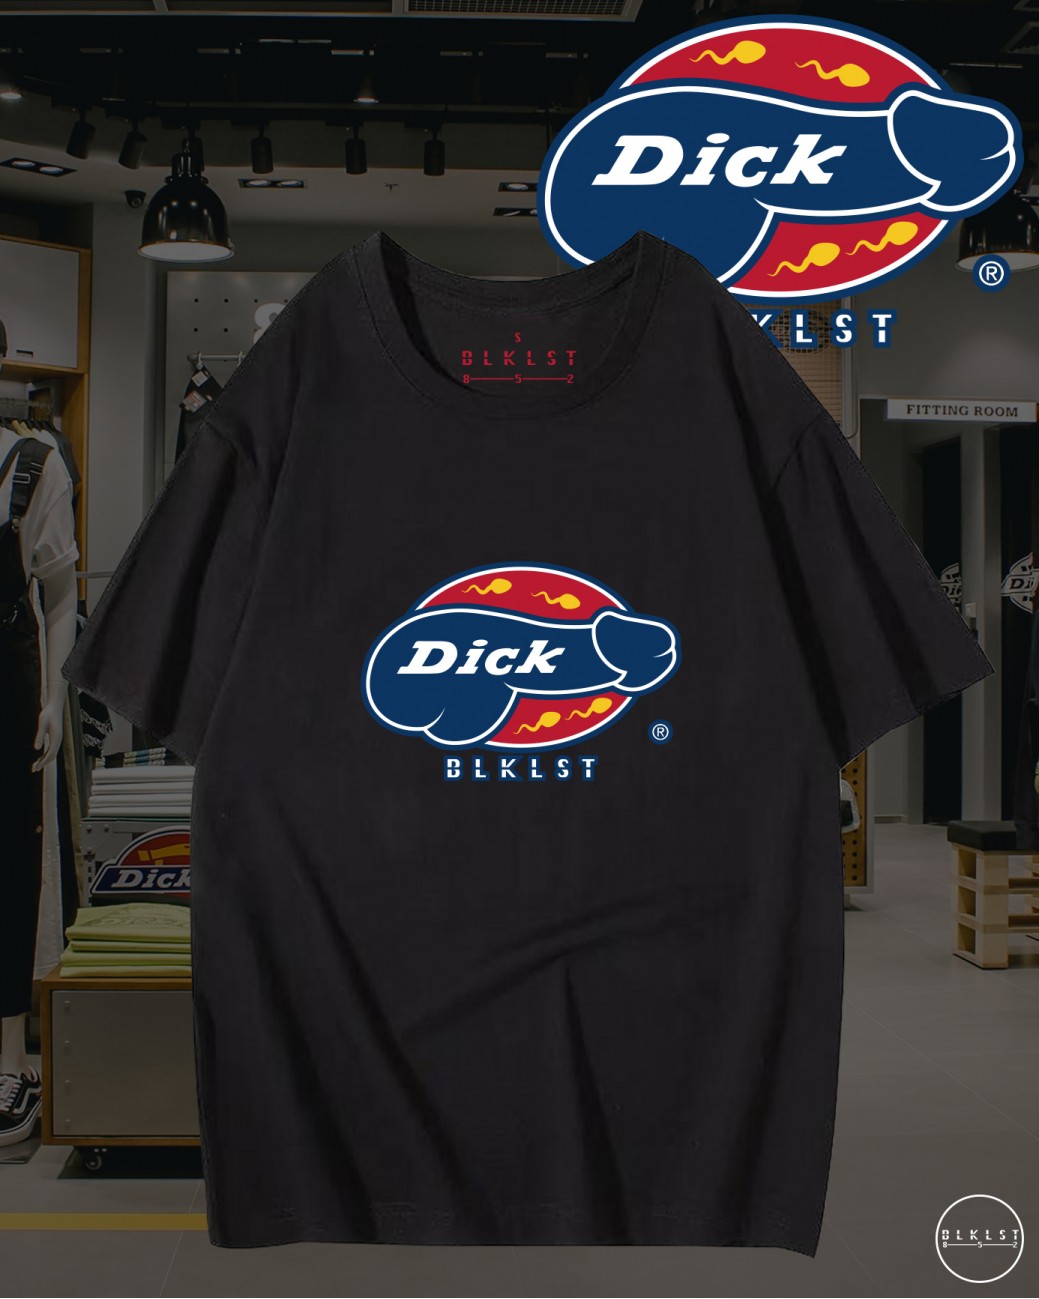 DICK T恤